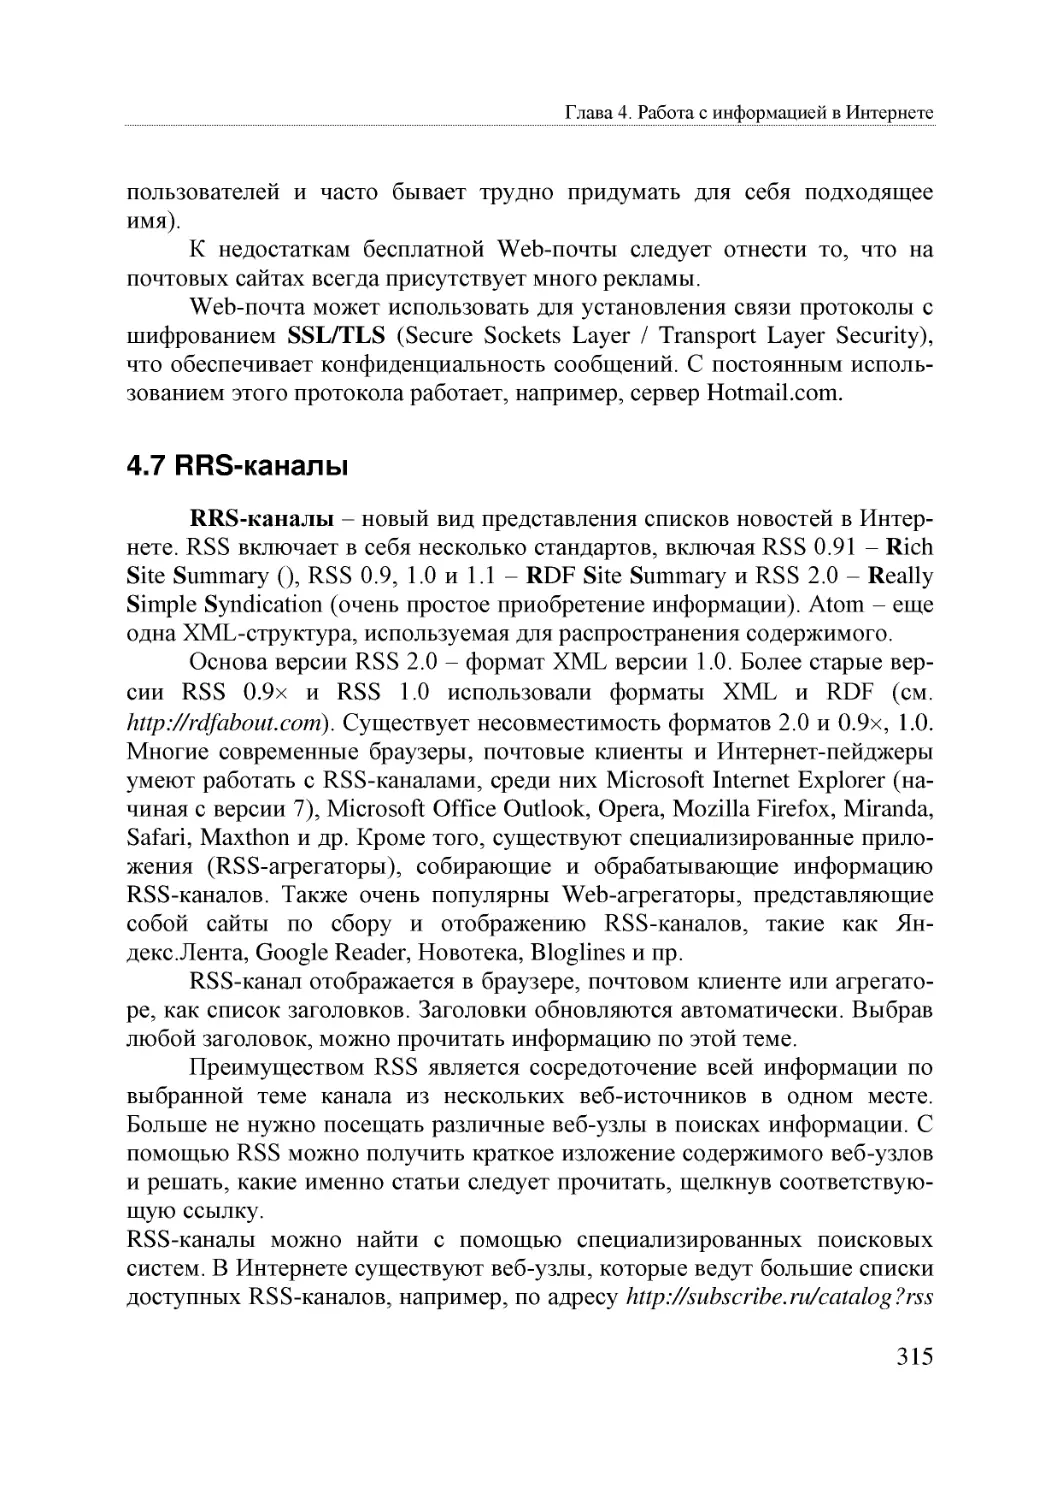 Informatika_Uchebnik_dlya_vuzov_2010 315